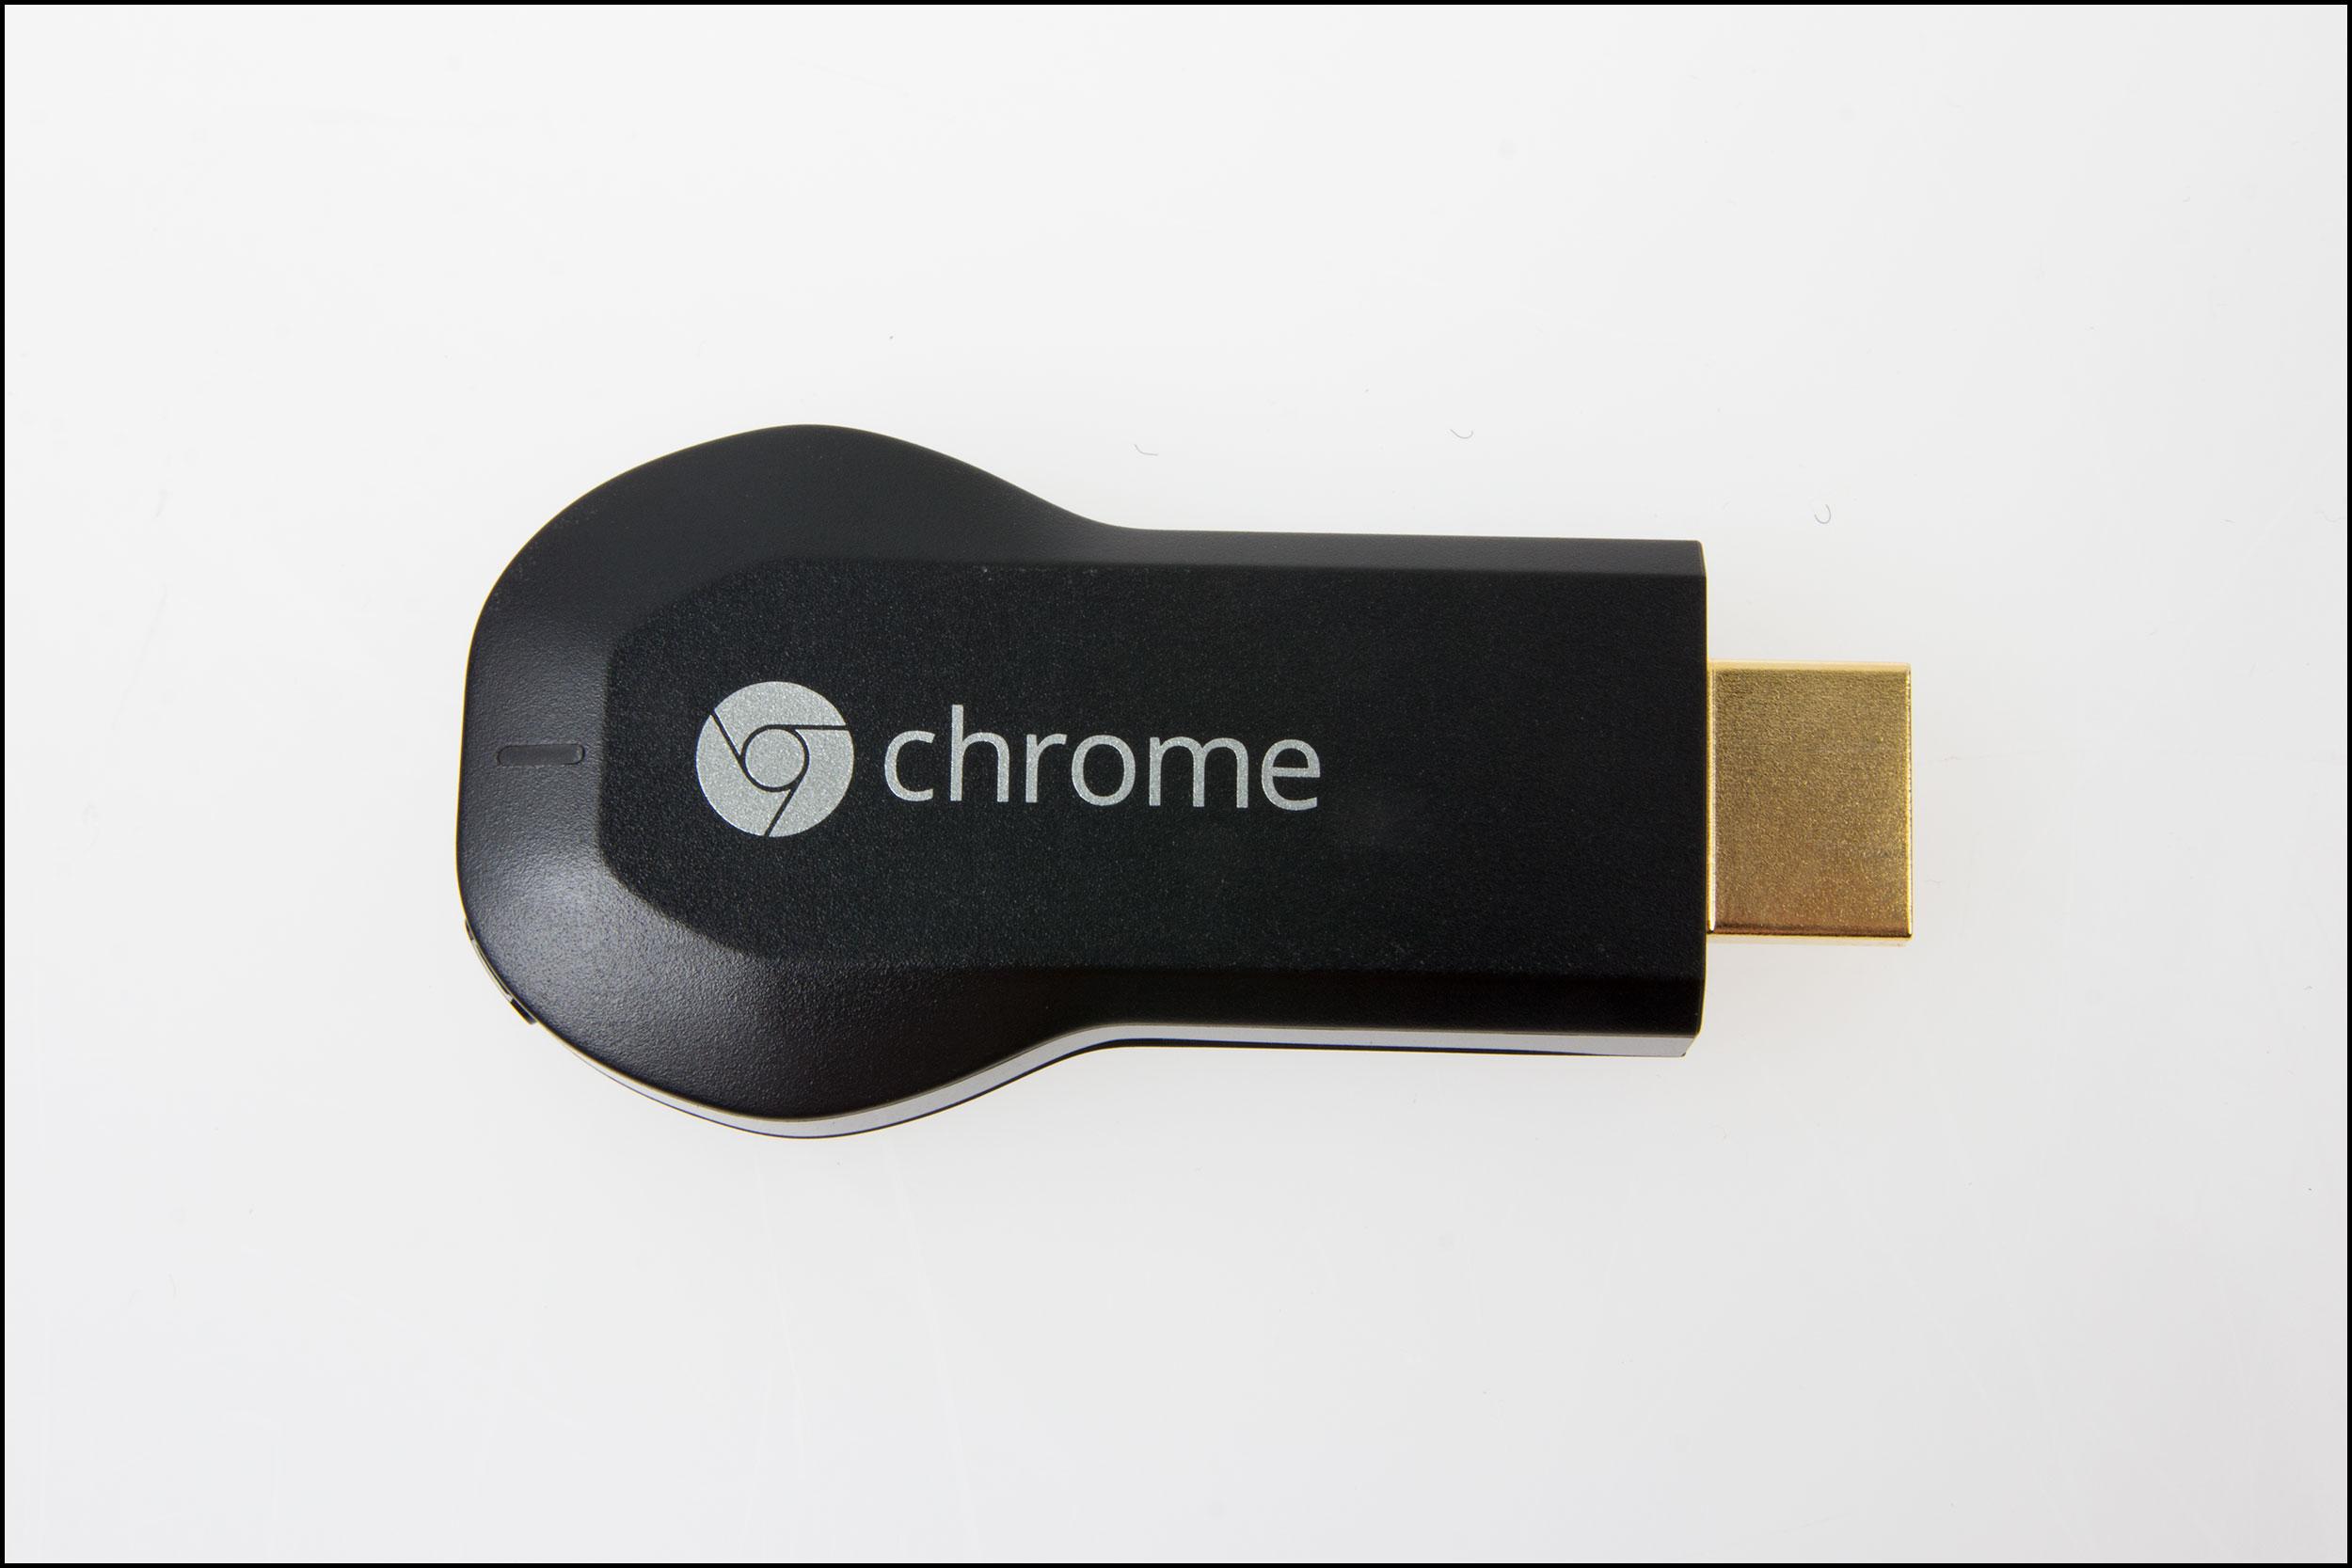 Chromecast er sort hele veien, foruten en enkel Chrome-logo på fremsiden.Foto: Jørgen Elton Nilsen, Hardware.no